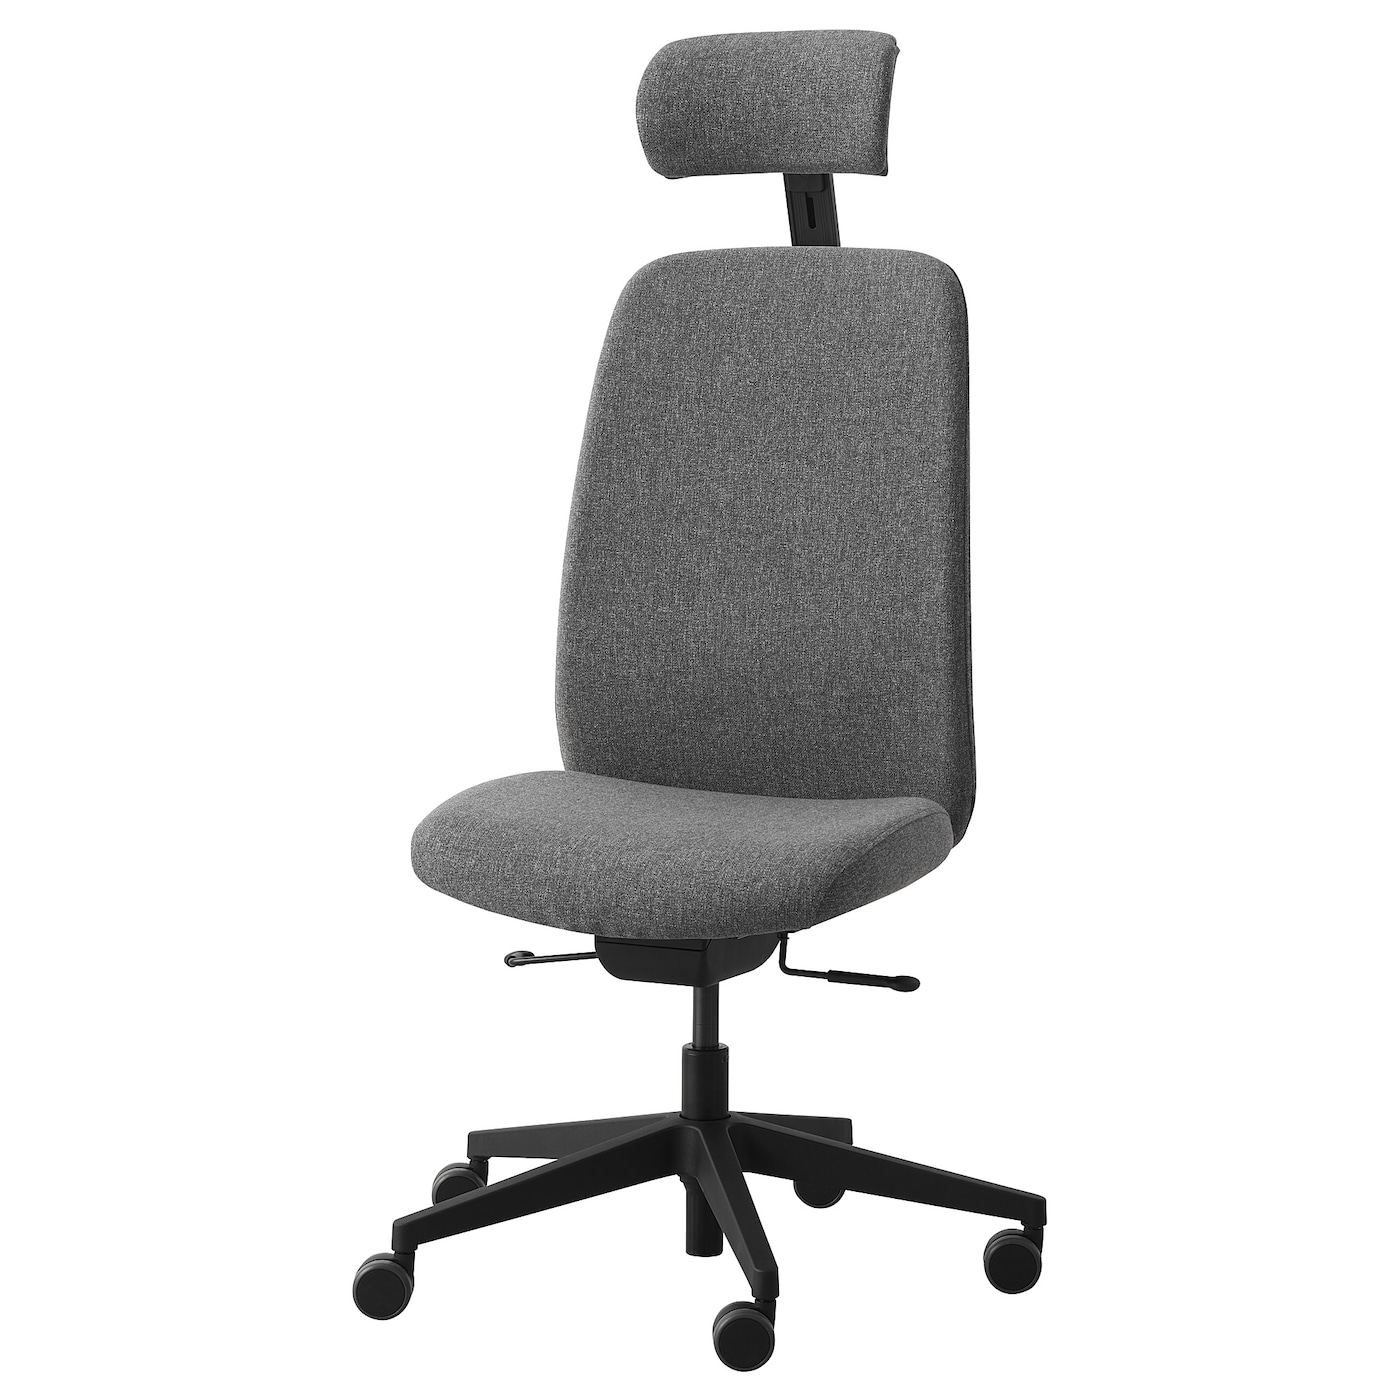 VALLFJäLLET - krzesło biurowe z zagłówkiem gunnared szary